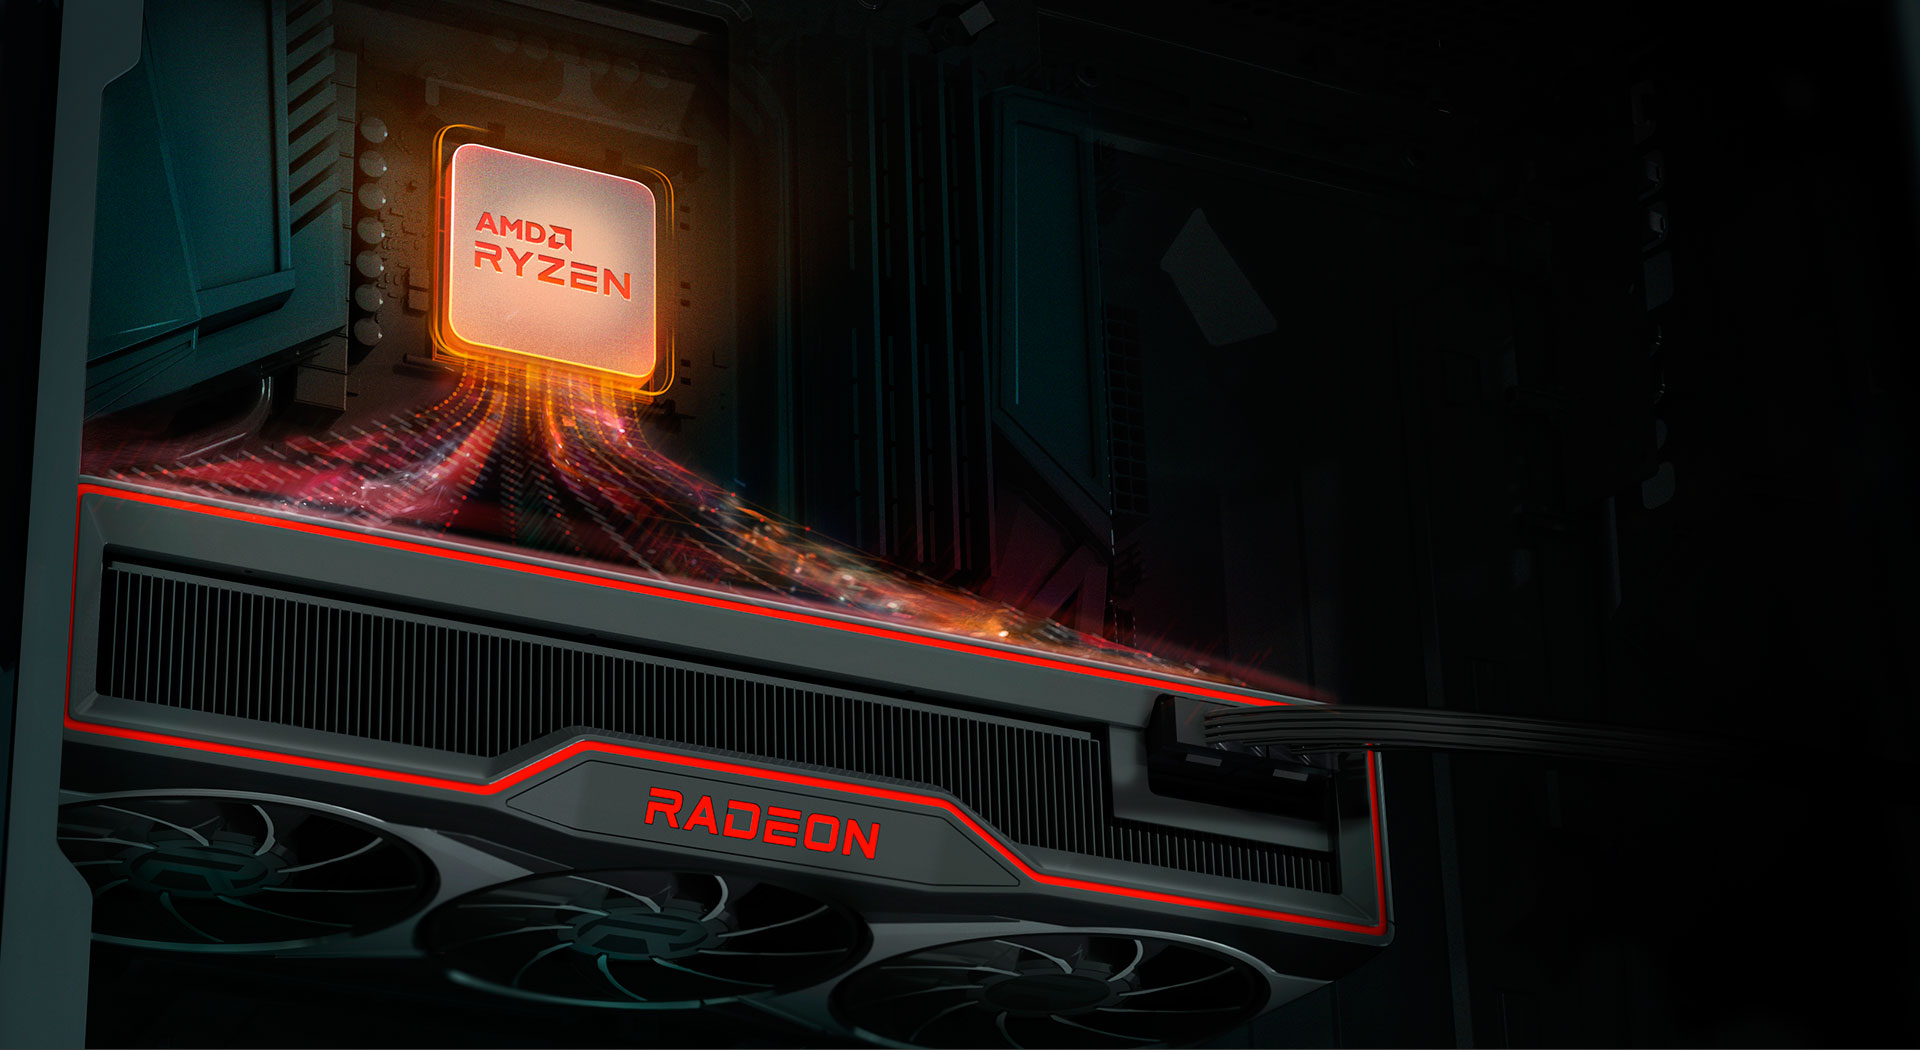 Her oyuncunun kaputun altında AMD'ye ihtiyaç duymasının 5 nedeni